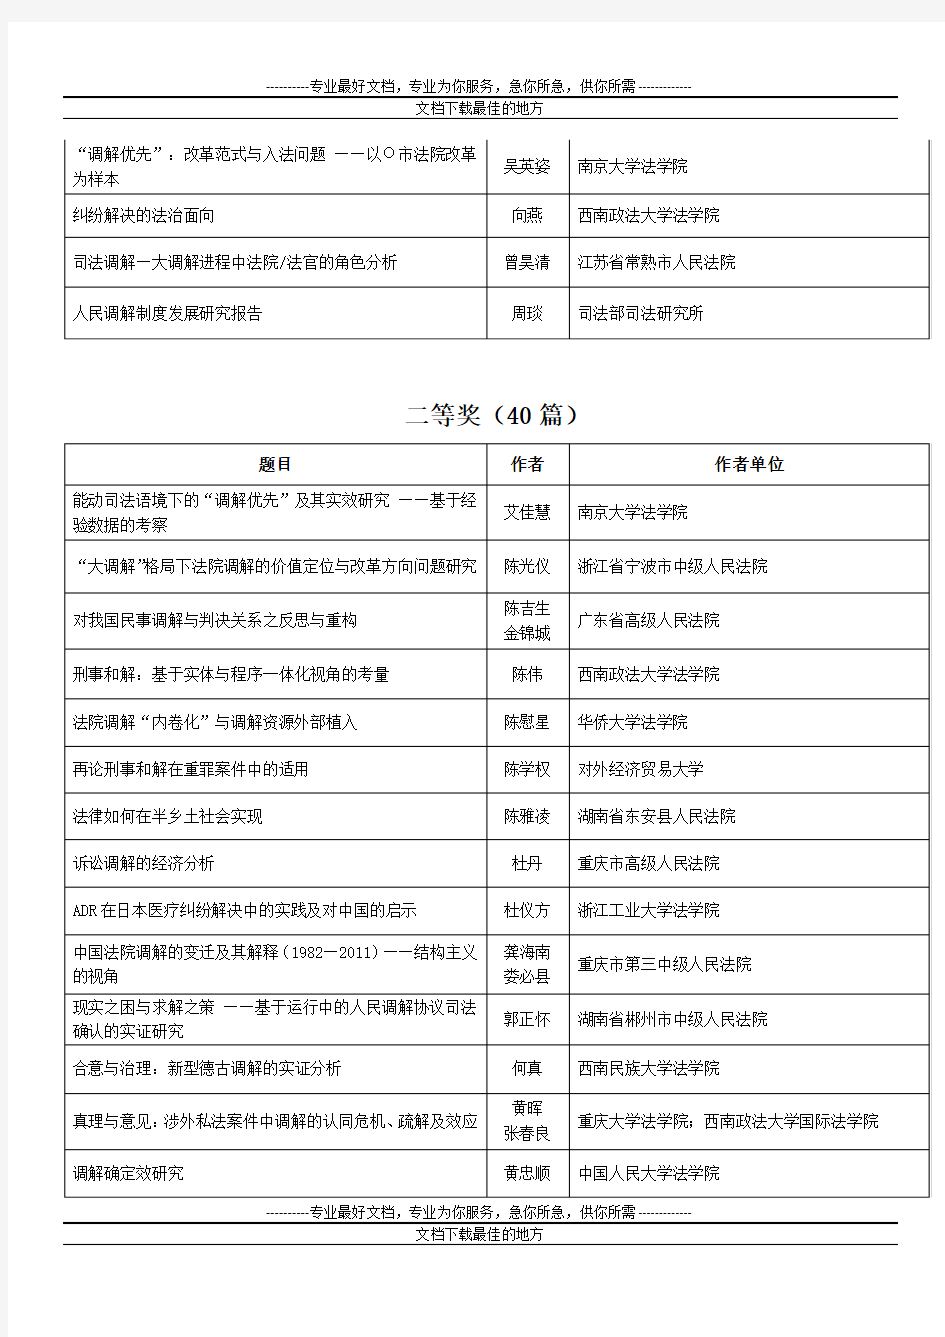 第七届中国法学青年论坛征文拟获奖论文名单